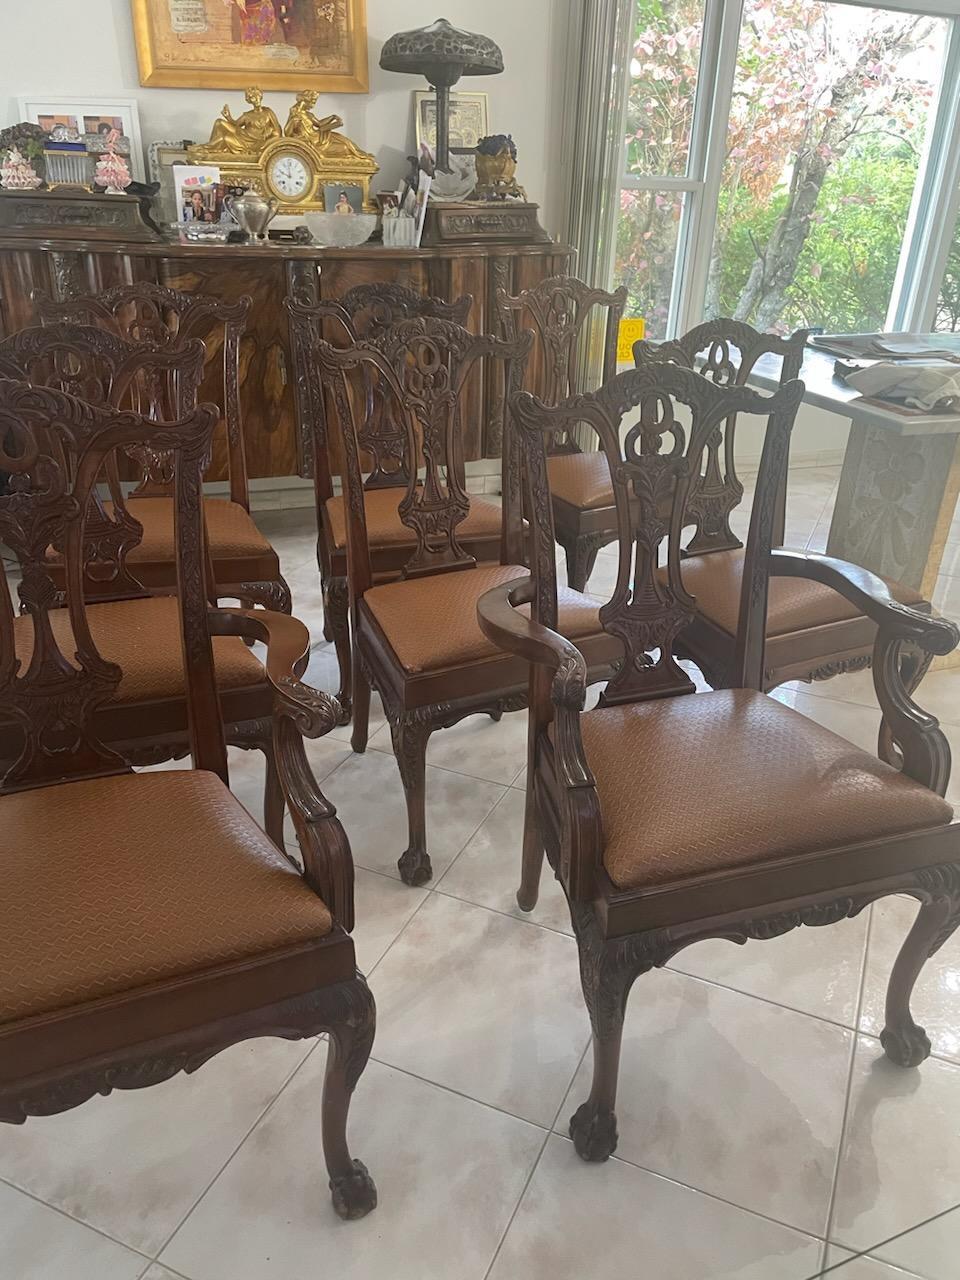 L'article suivant est un Rare Set of Important Fine Estate Suite of Eight George III-Style Mahogany Dining Chairs (Ensemble de huit chaises de salle à manger en acajou de style George III).
20ème siècle, composé d'une paire de fauteuils et de six